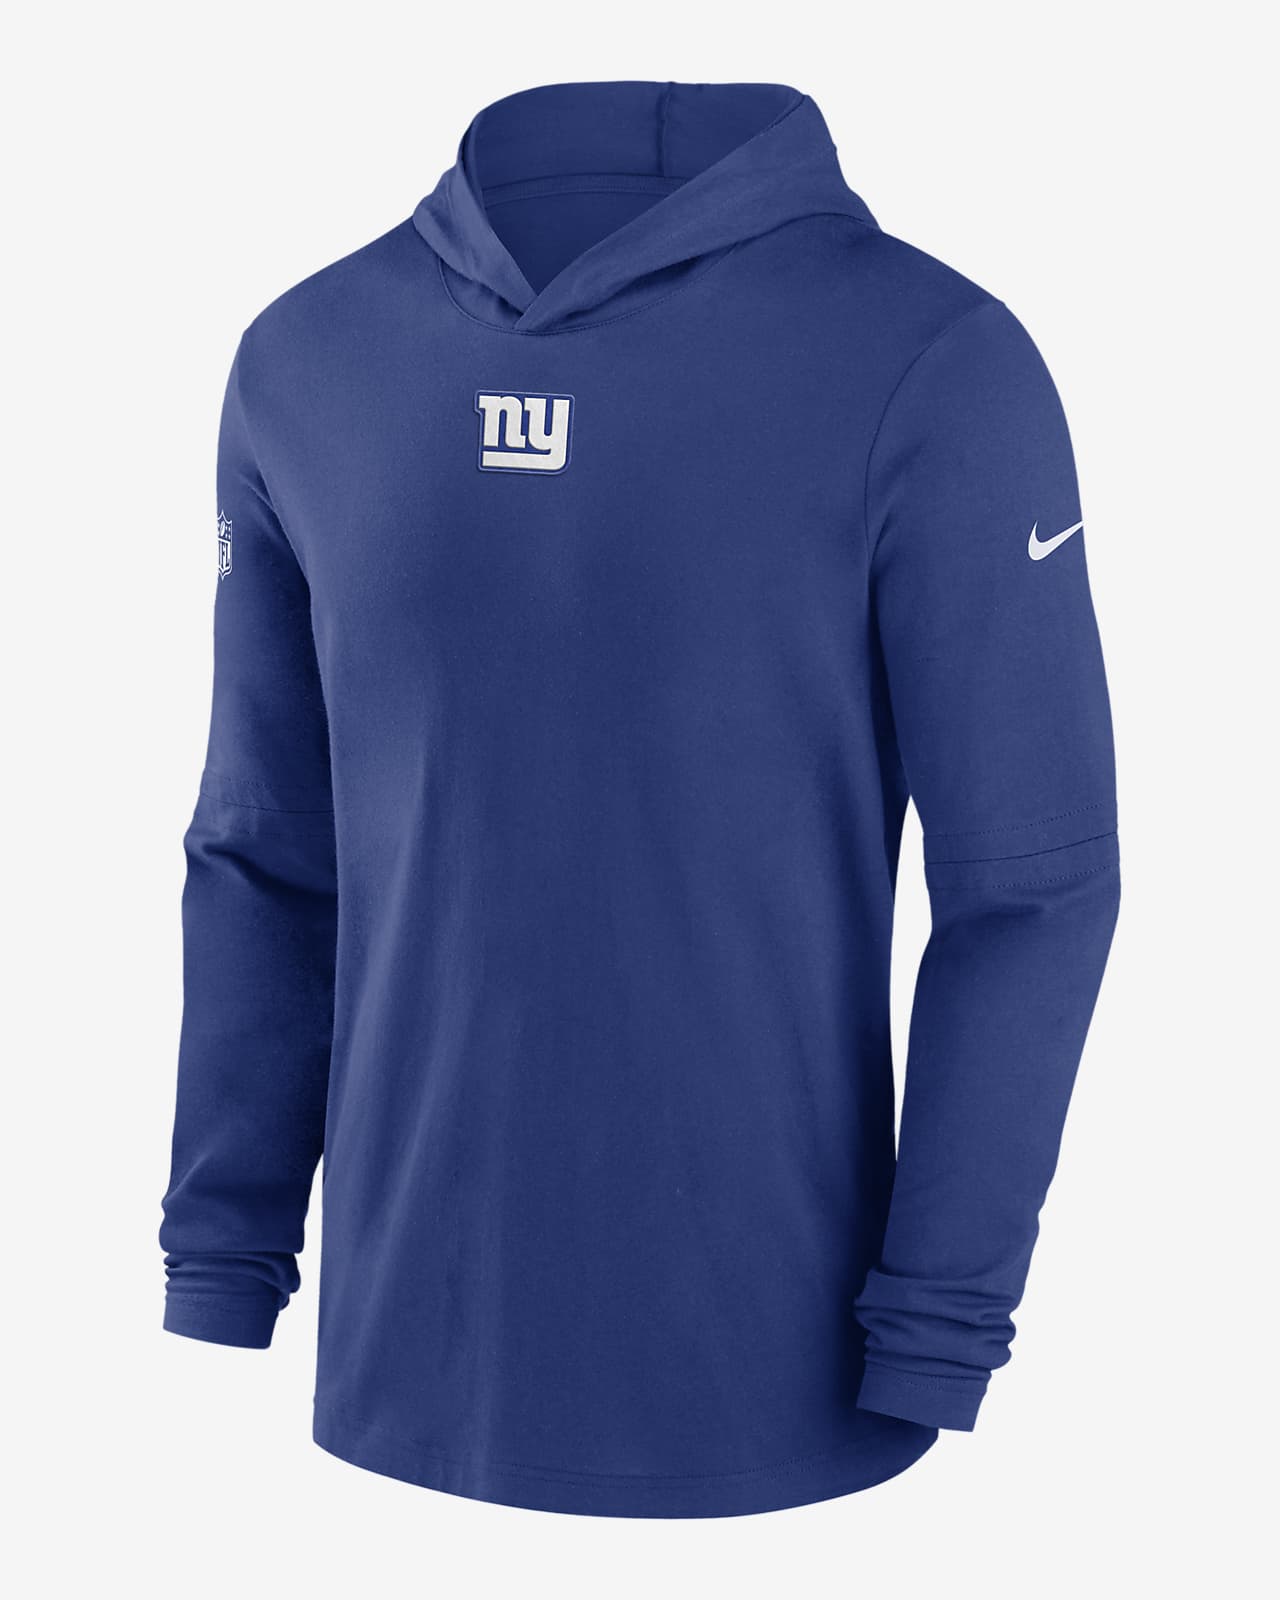 ny giants sideline hoodie